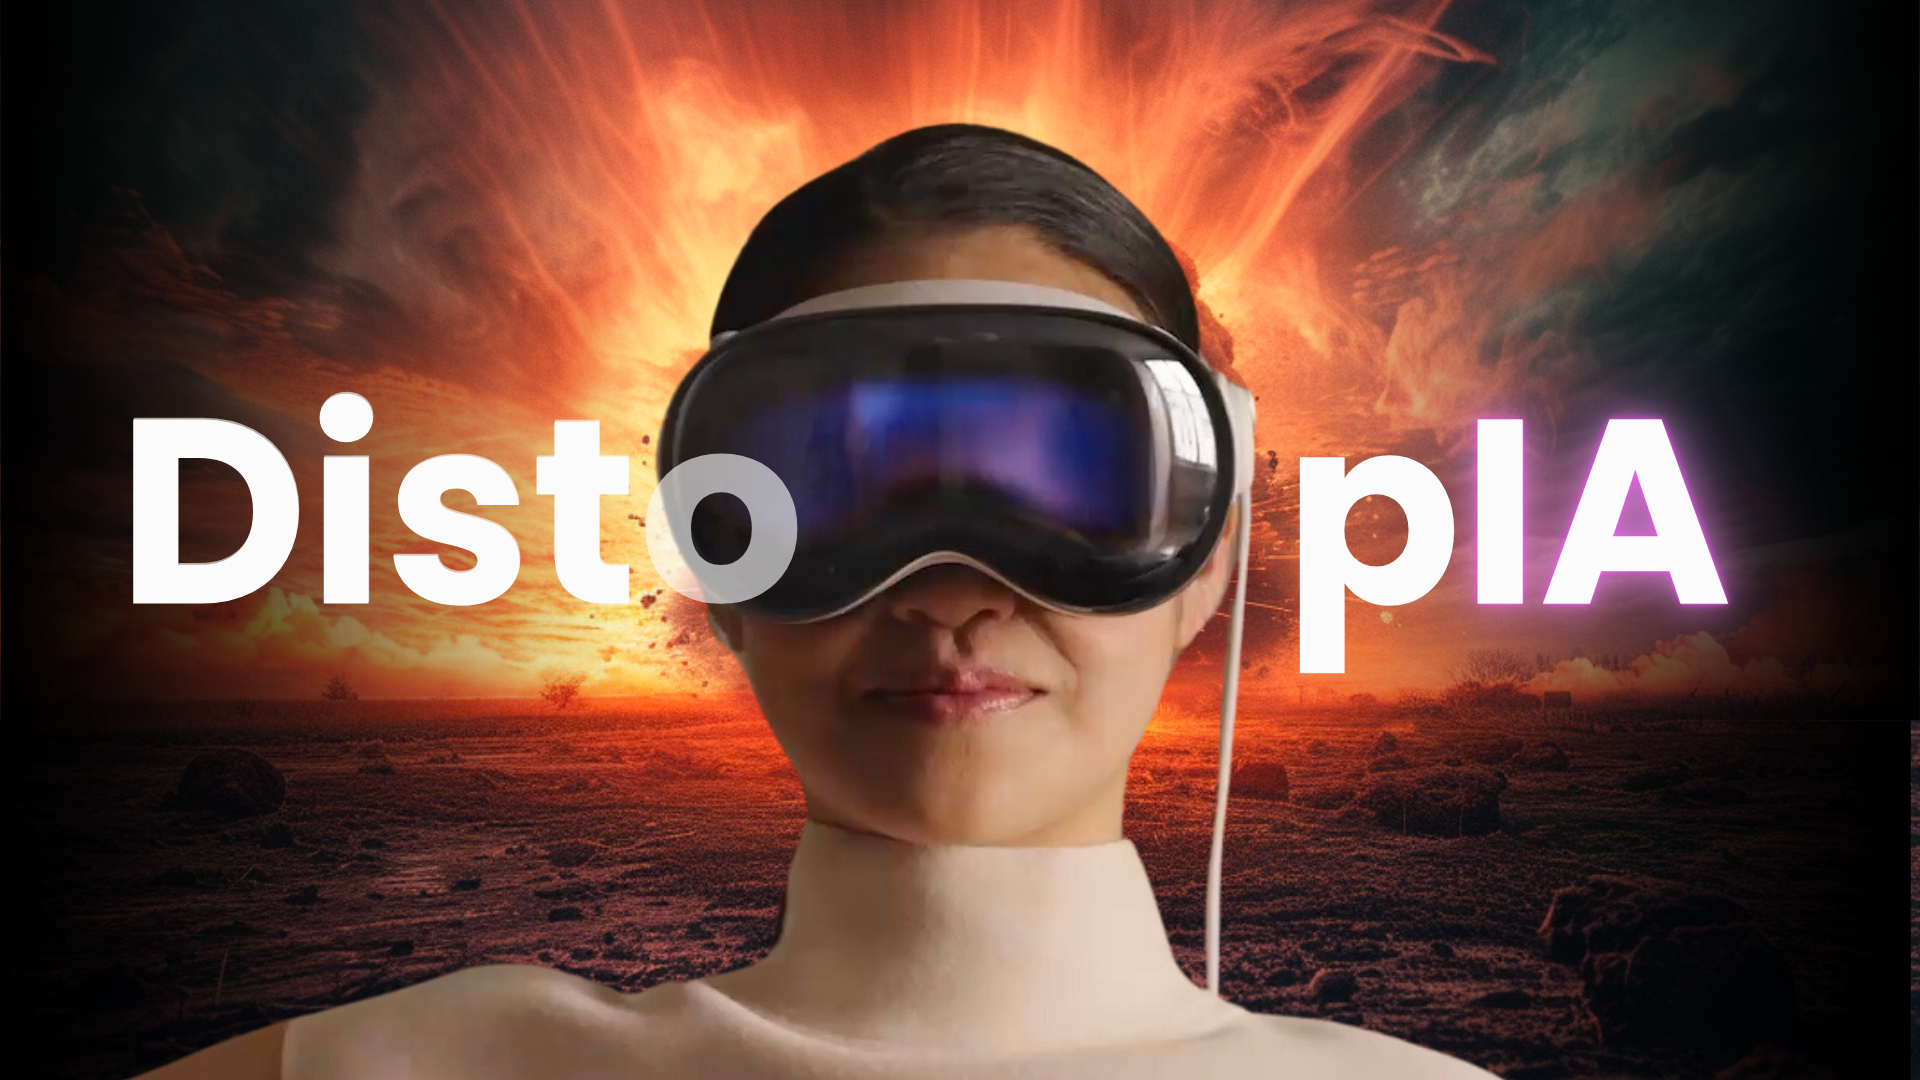 Mujer con los Apple Vision Pro en una escena apocalíptica, con el texto "DistopIA", relacionando la IA